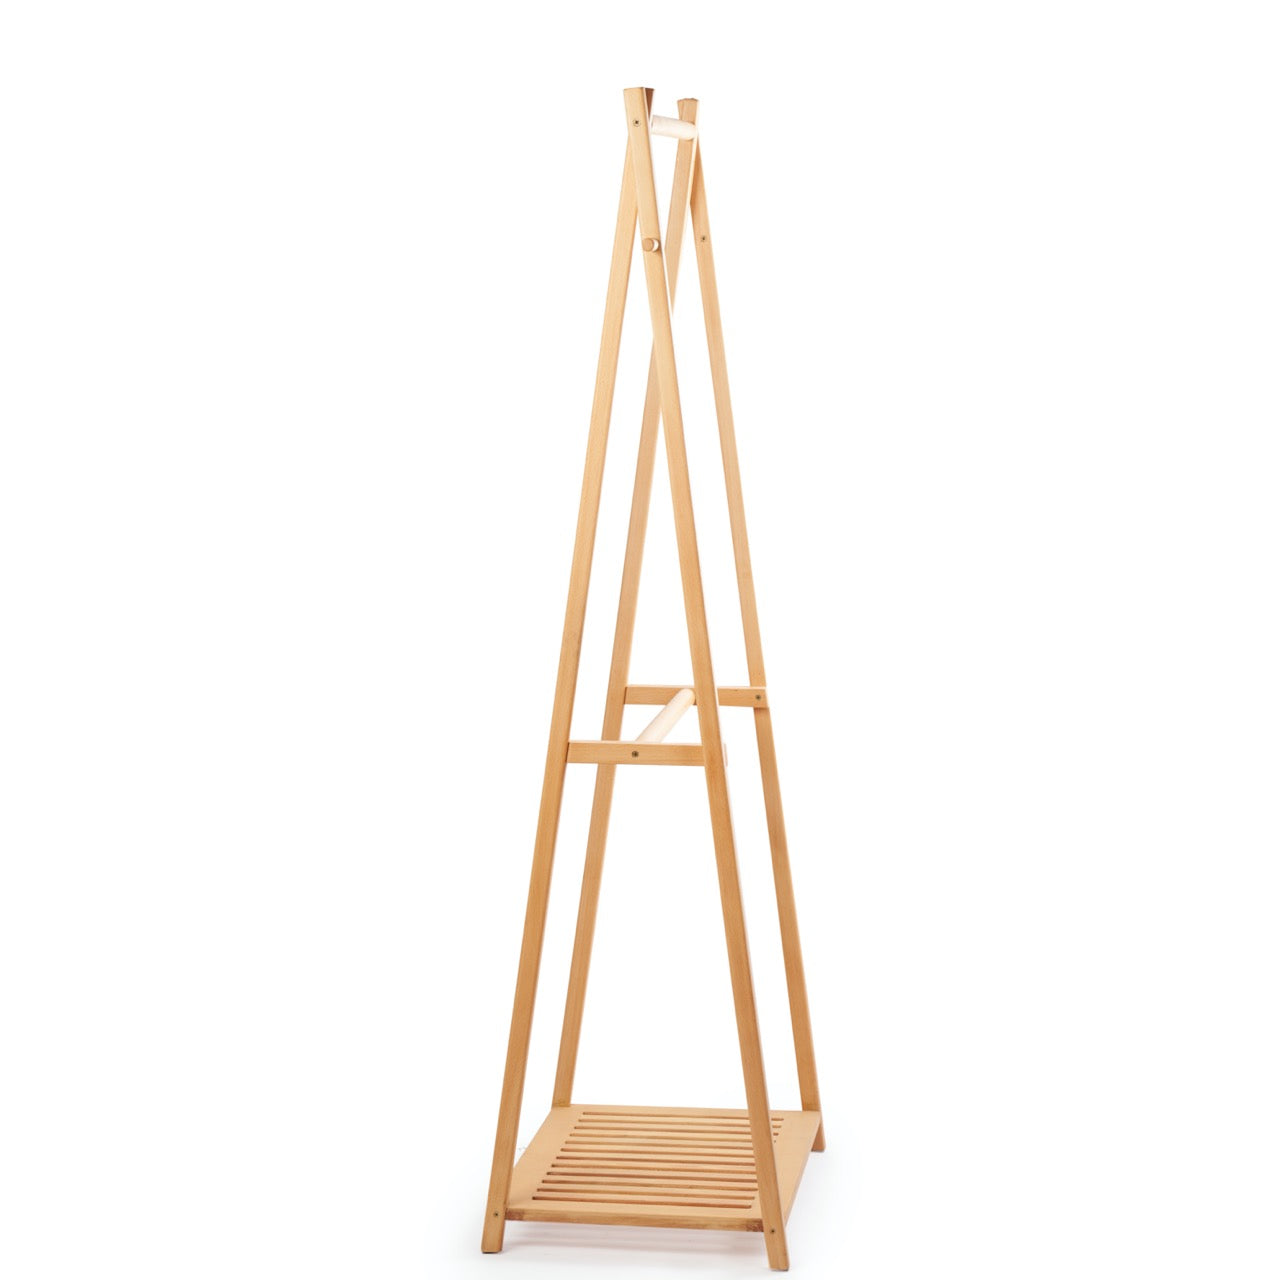 Ronlook- Wooden Hanger Rack